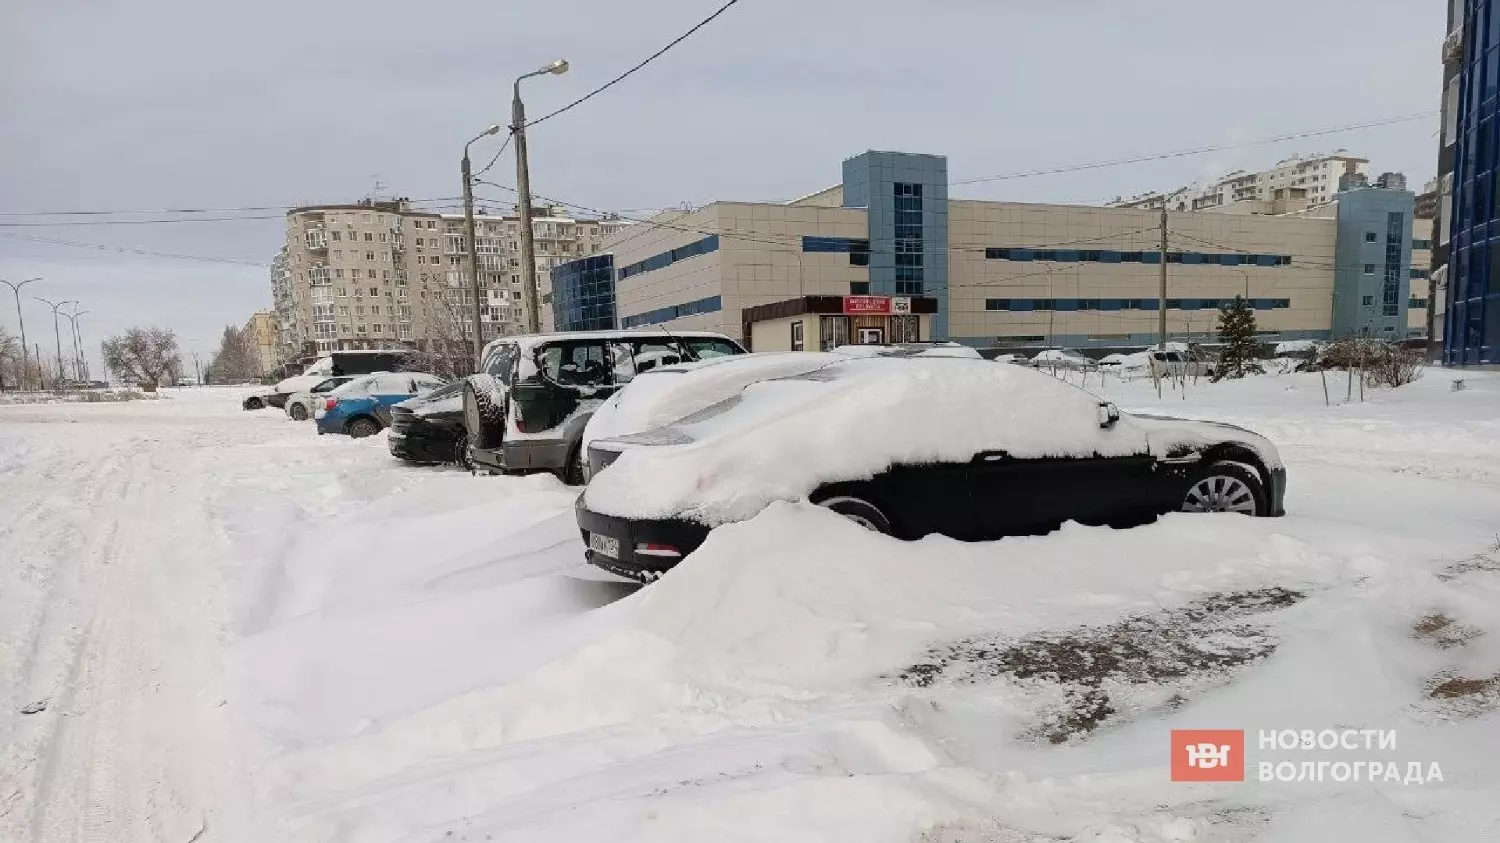 Занесённые снегом машины и местные проезды в оживлённом микрорайоне на западе Волгограда